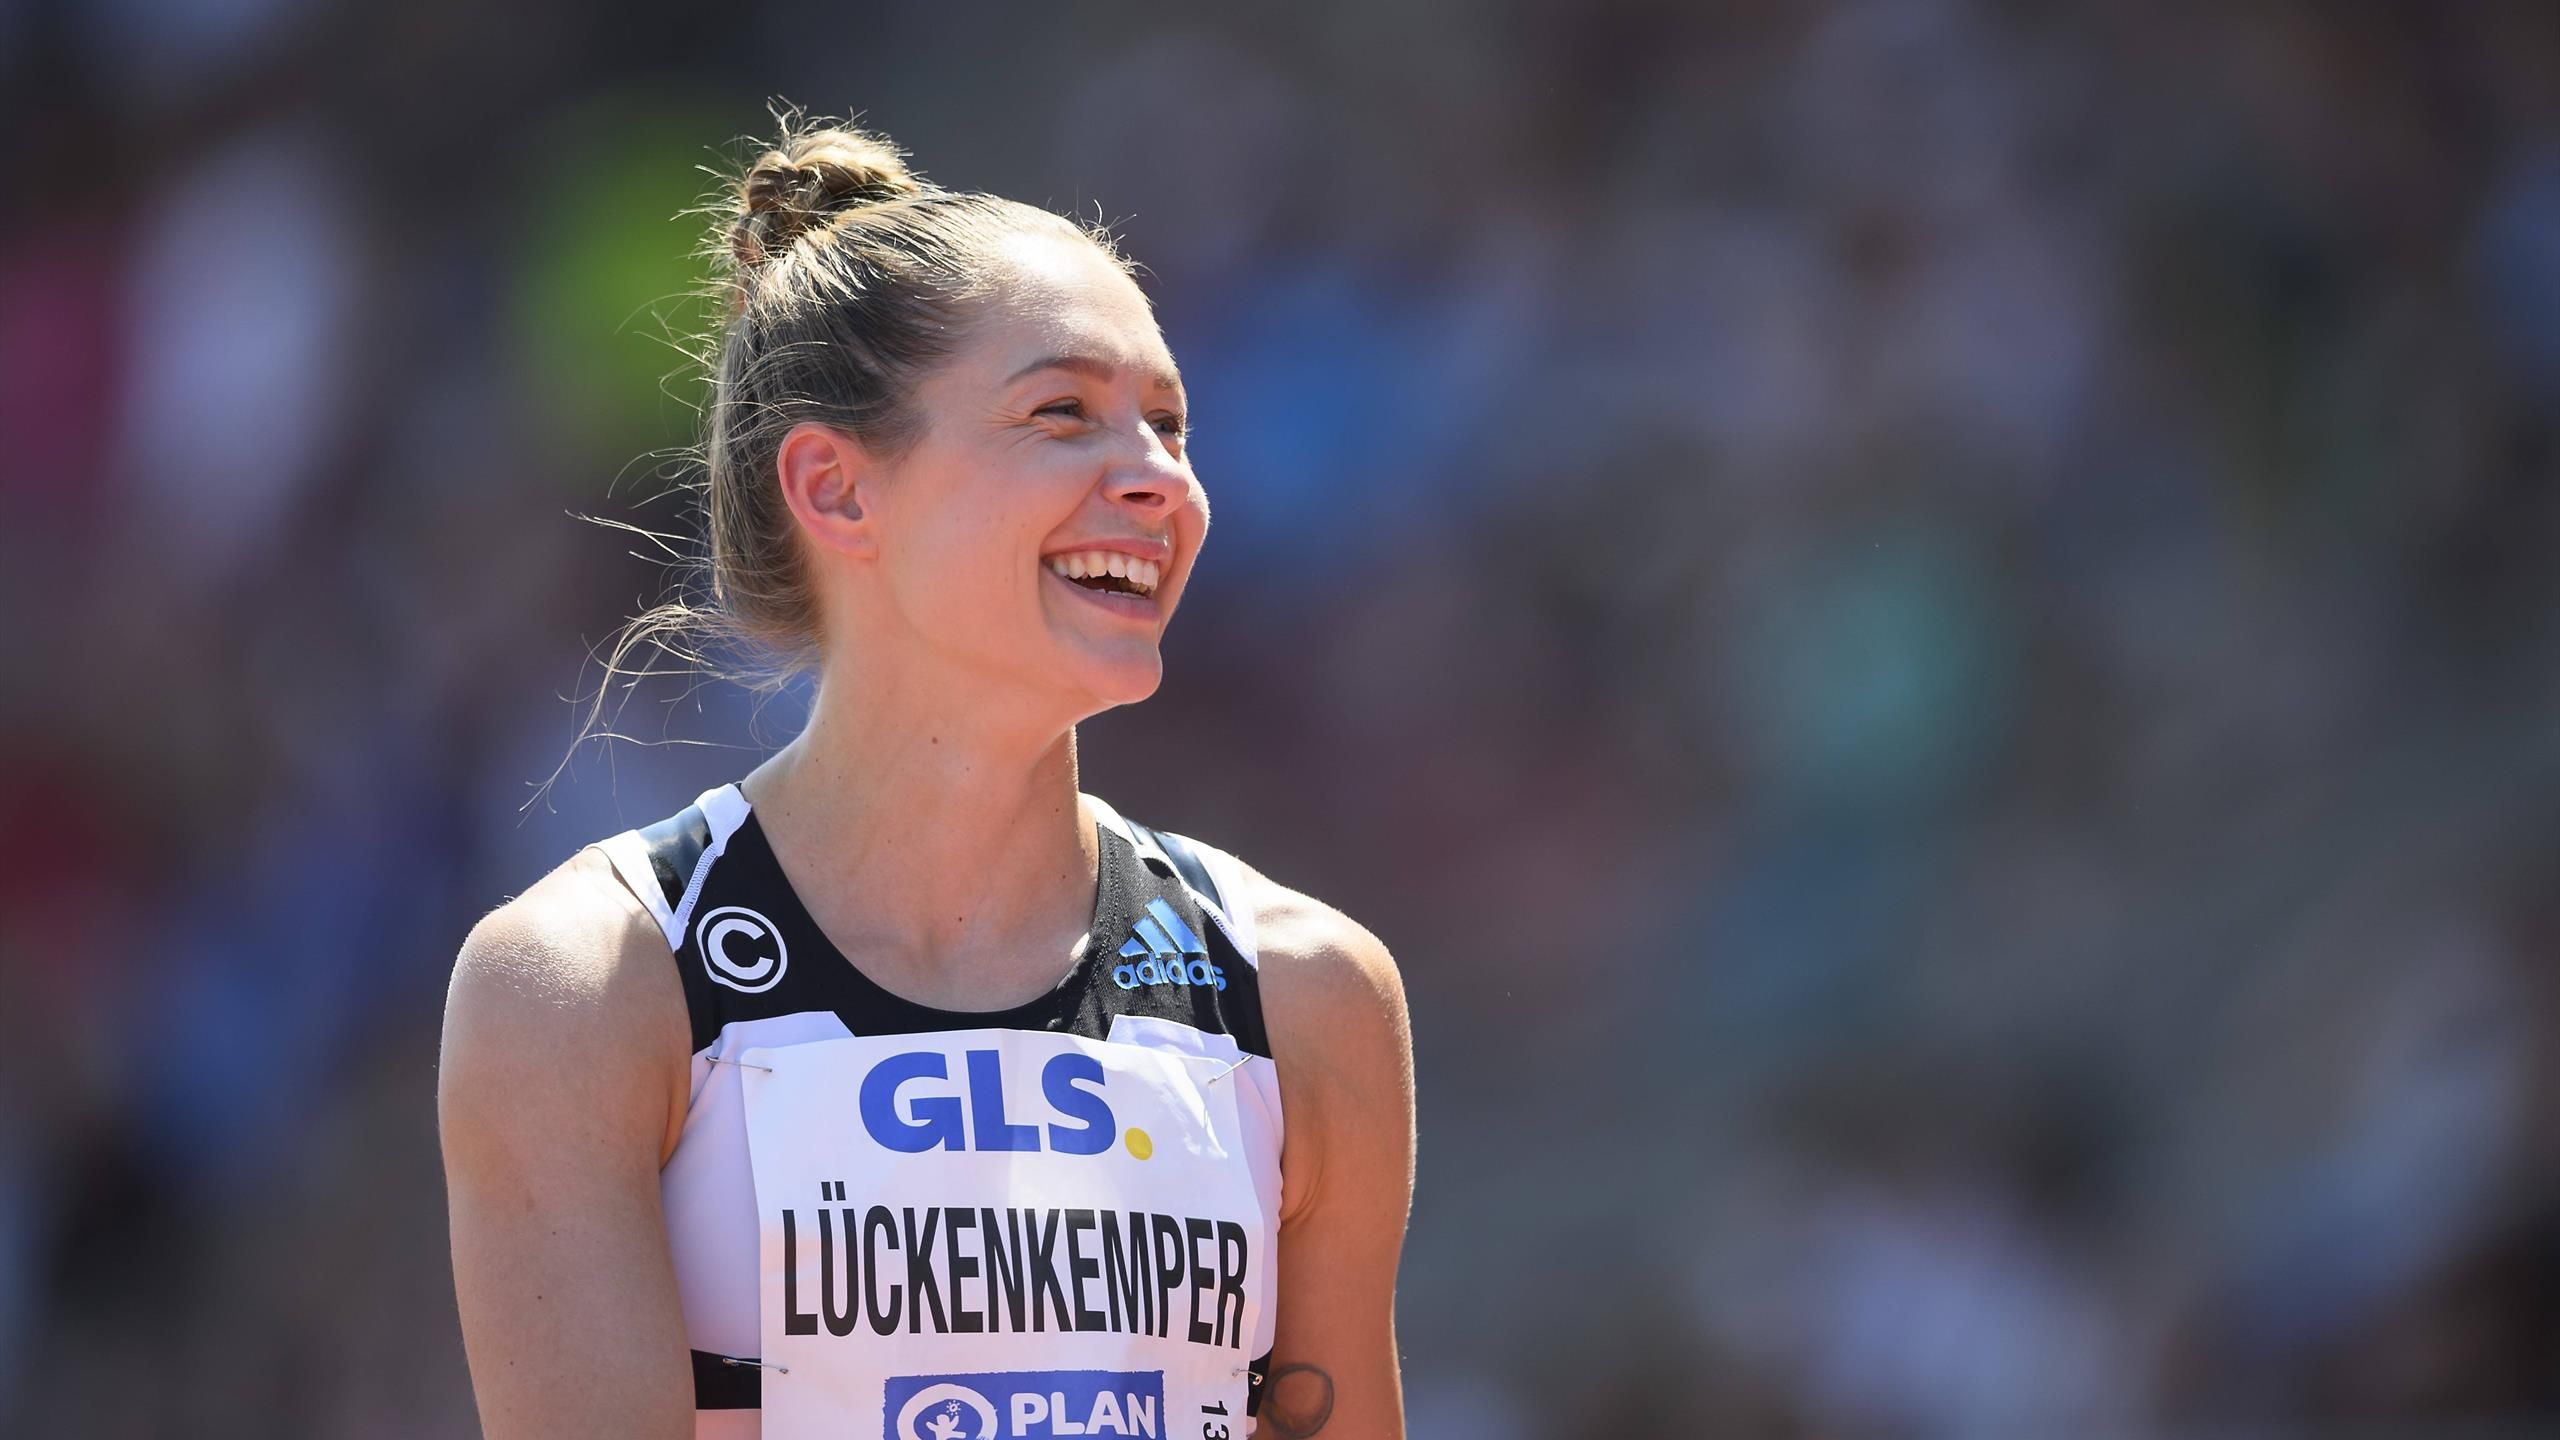 Leichtathletik-WM Deutscher Kader steht fest - Gina Lückenkemper, Niklas Kaul und Malaika Mihamo nominiert